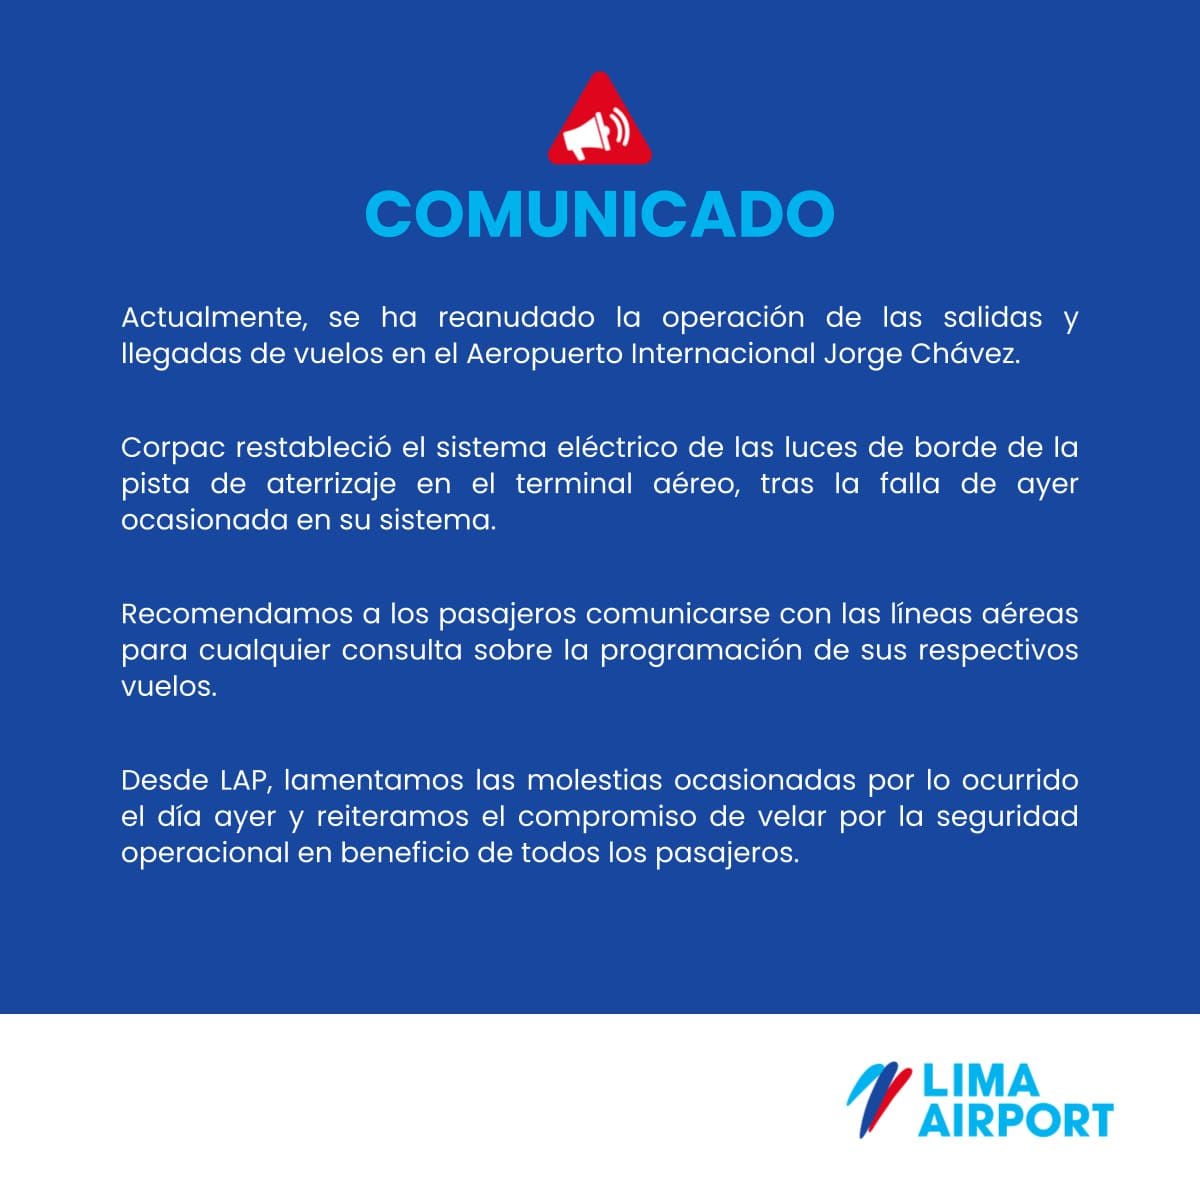 Comunicado de LAP sobre la reanudación de la llegada de vuelos al aeropuerto Jorge Chávez